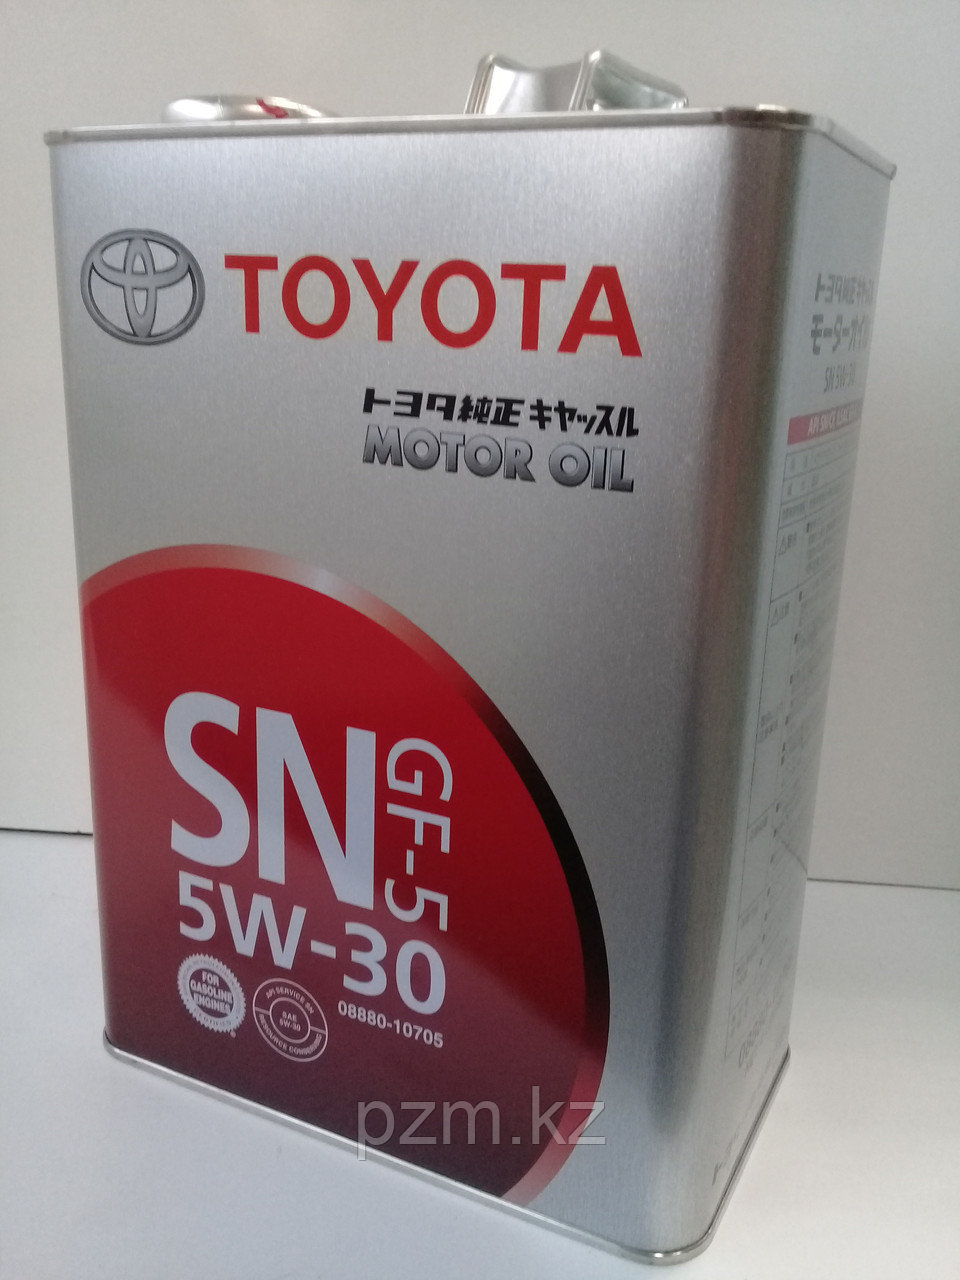 Замена масла в двигателе Toyota Celica (масло + фильтр)  оригинальное моторное масло тойота 5W30